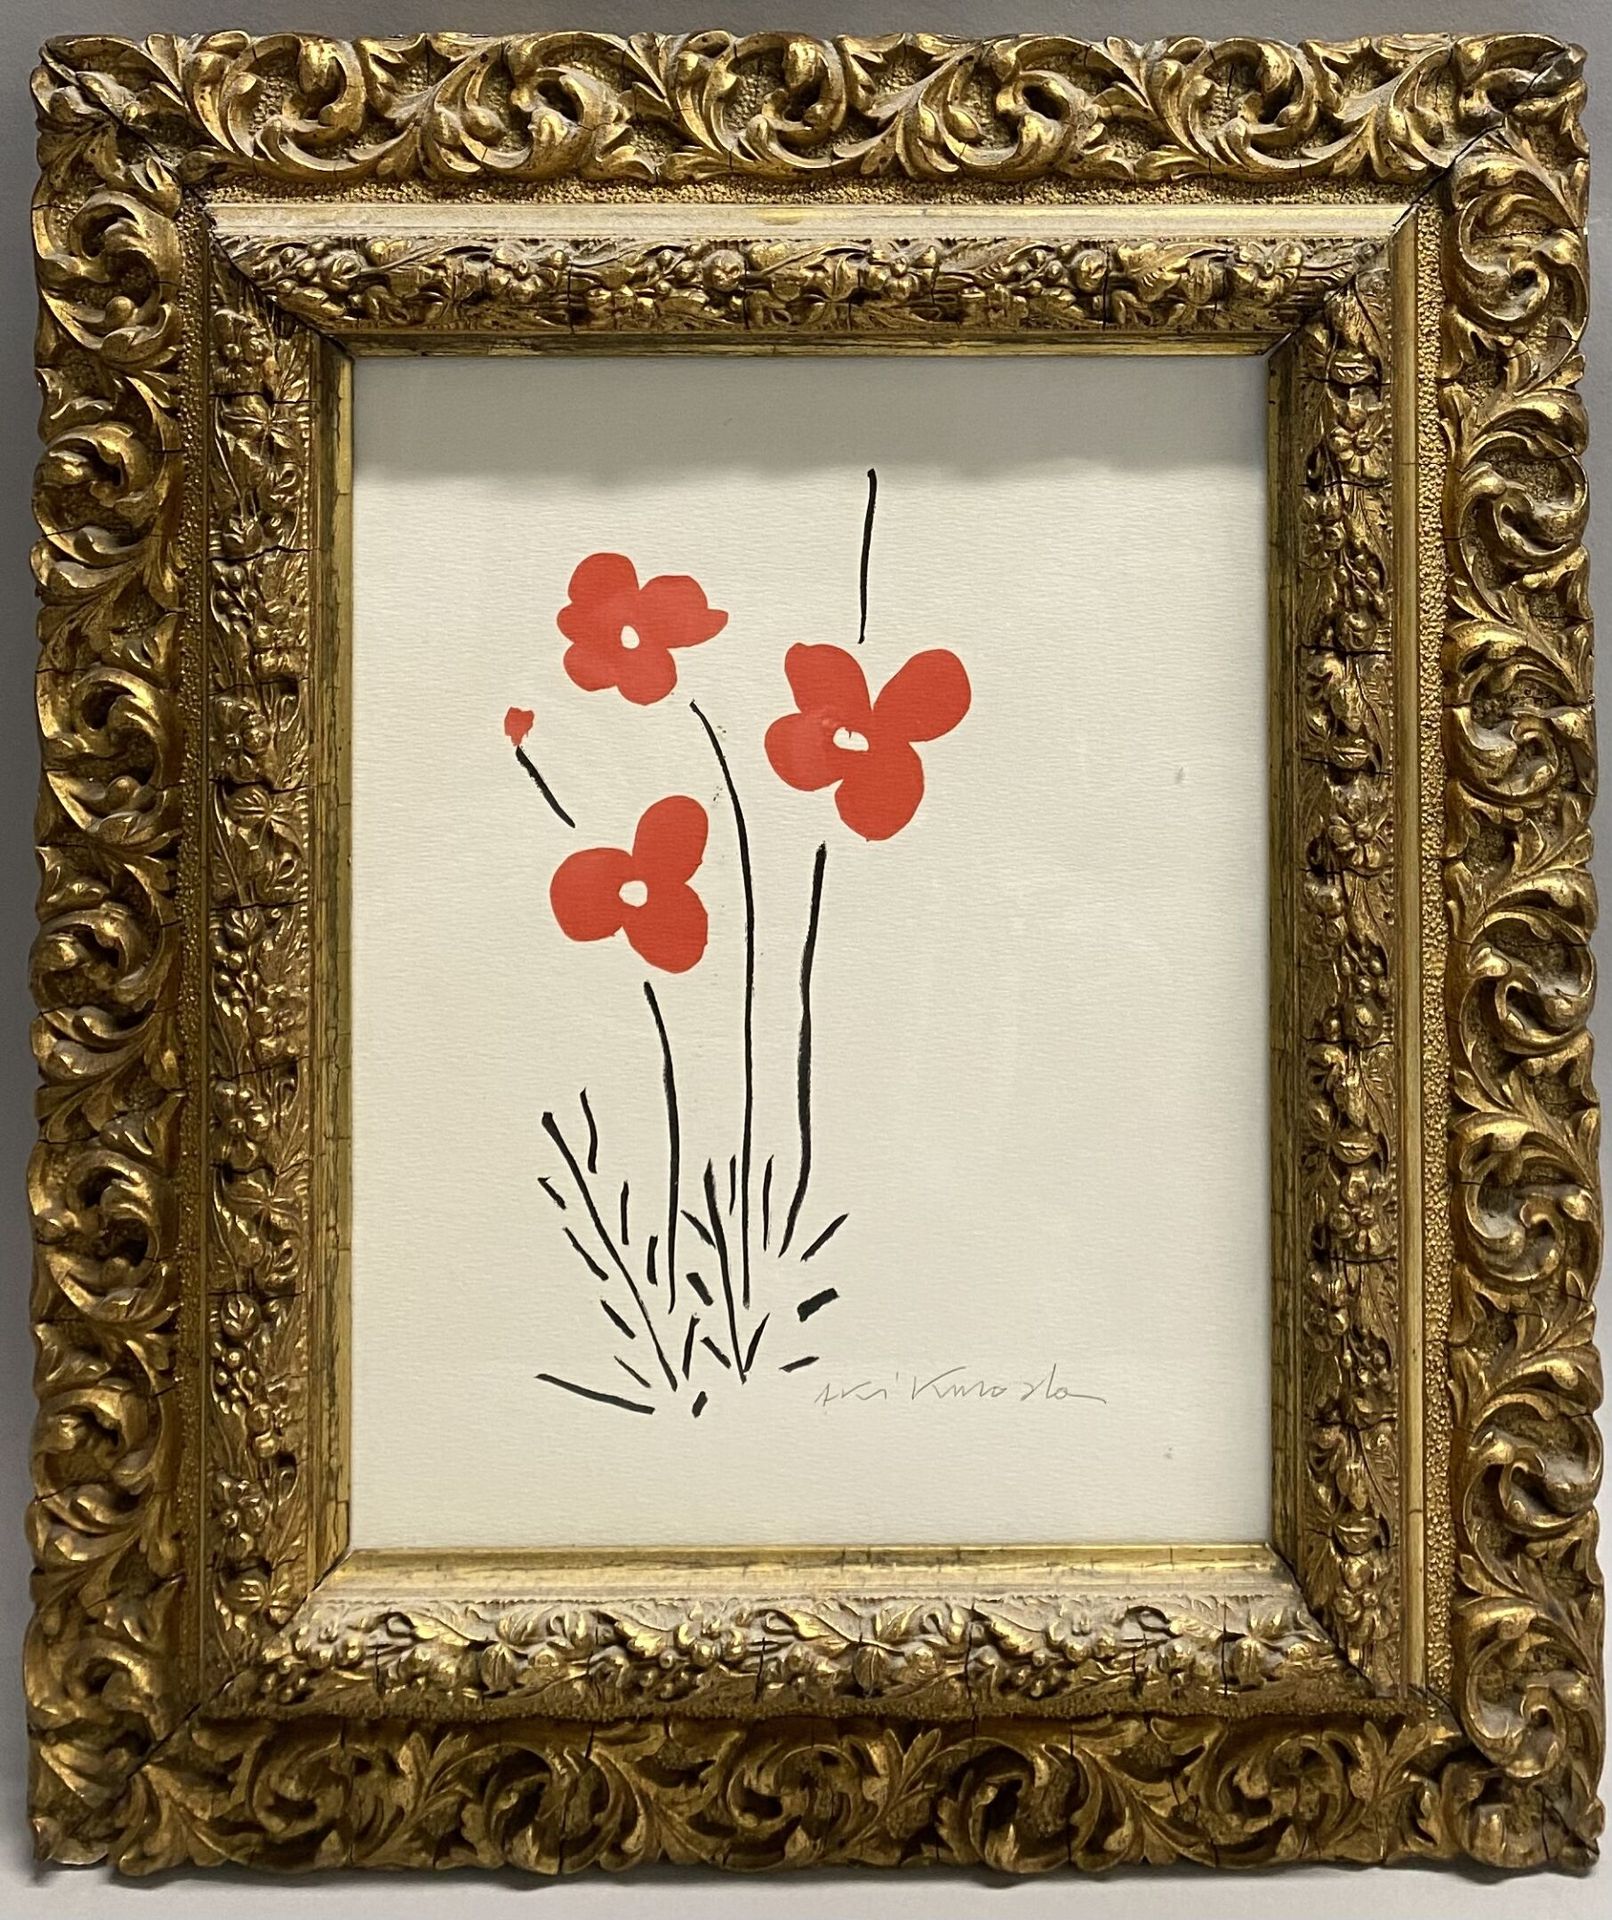 Null 黑田亚纪(生于1944年)
"花"。
丝网印刷在纸上。 
22,5 x 18 cm (正在展出)